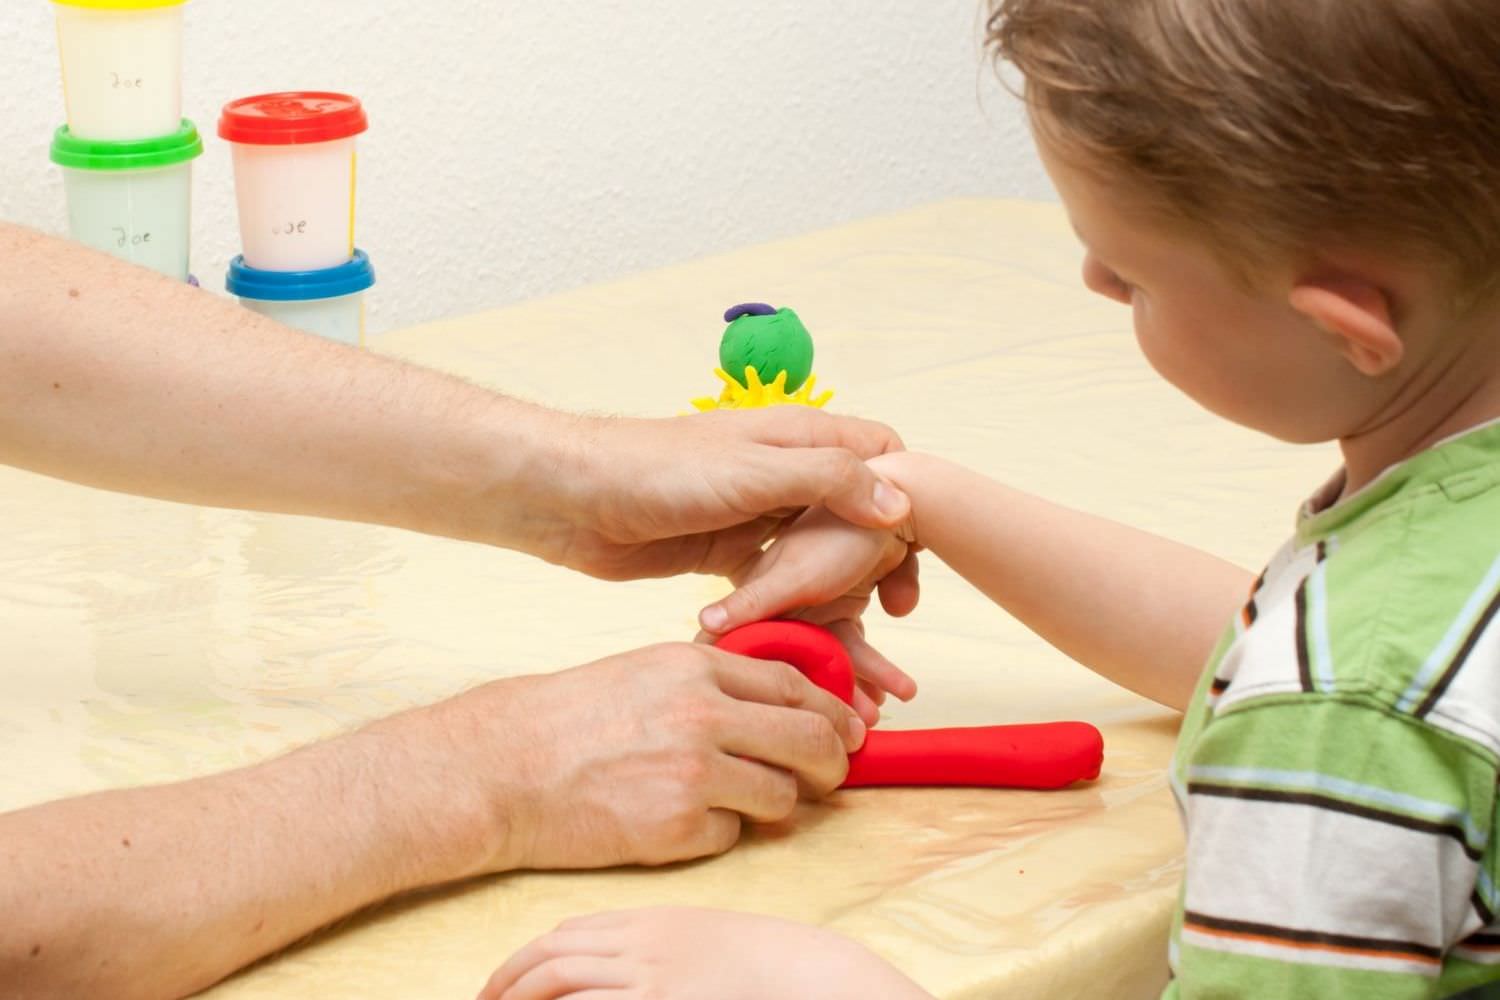 Bild zeigt: Ergotherapeut erklärt einem Jungen eine Übung für die Hand mit roter Knete